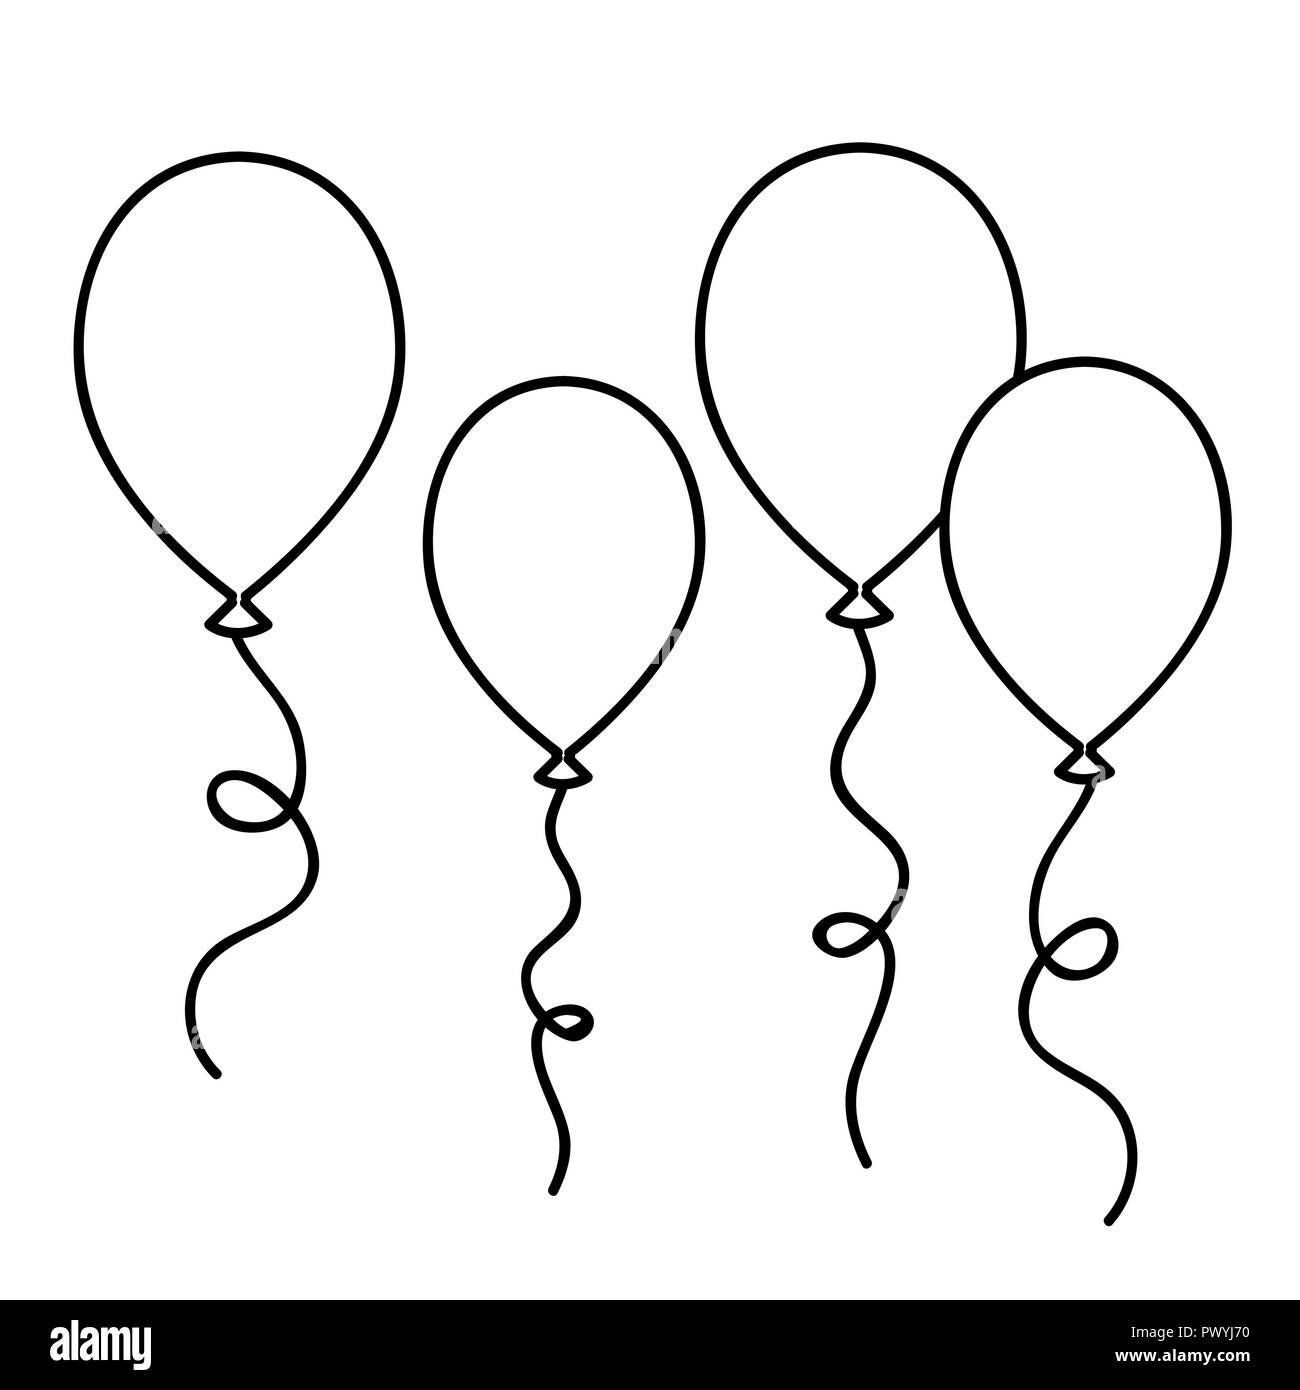 Раскраска для детей года воздушные шарики распечатать